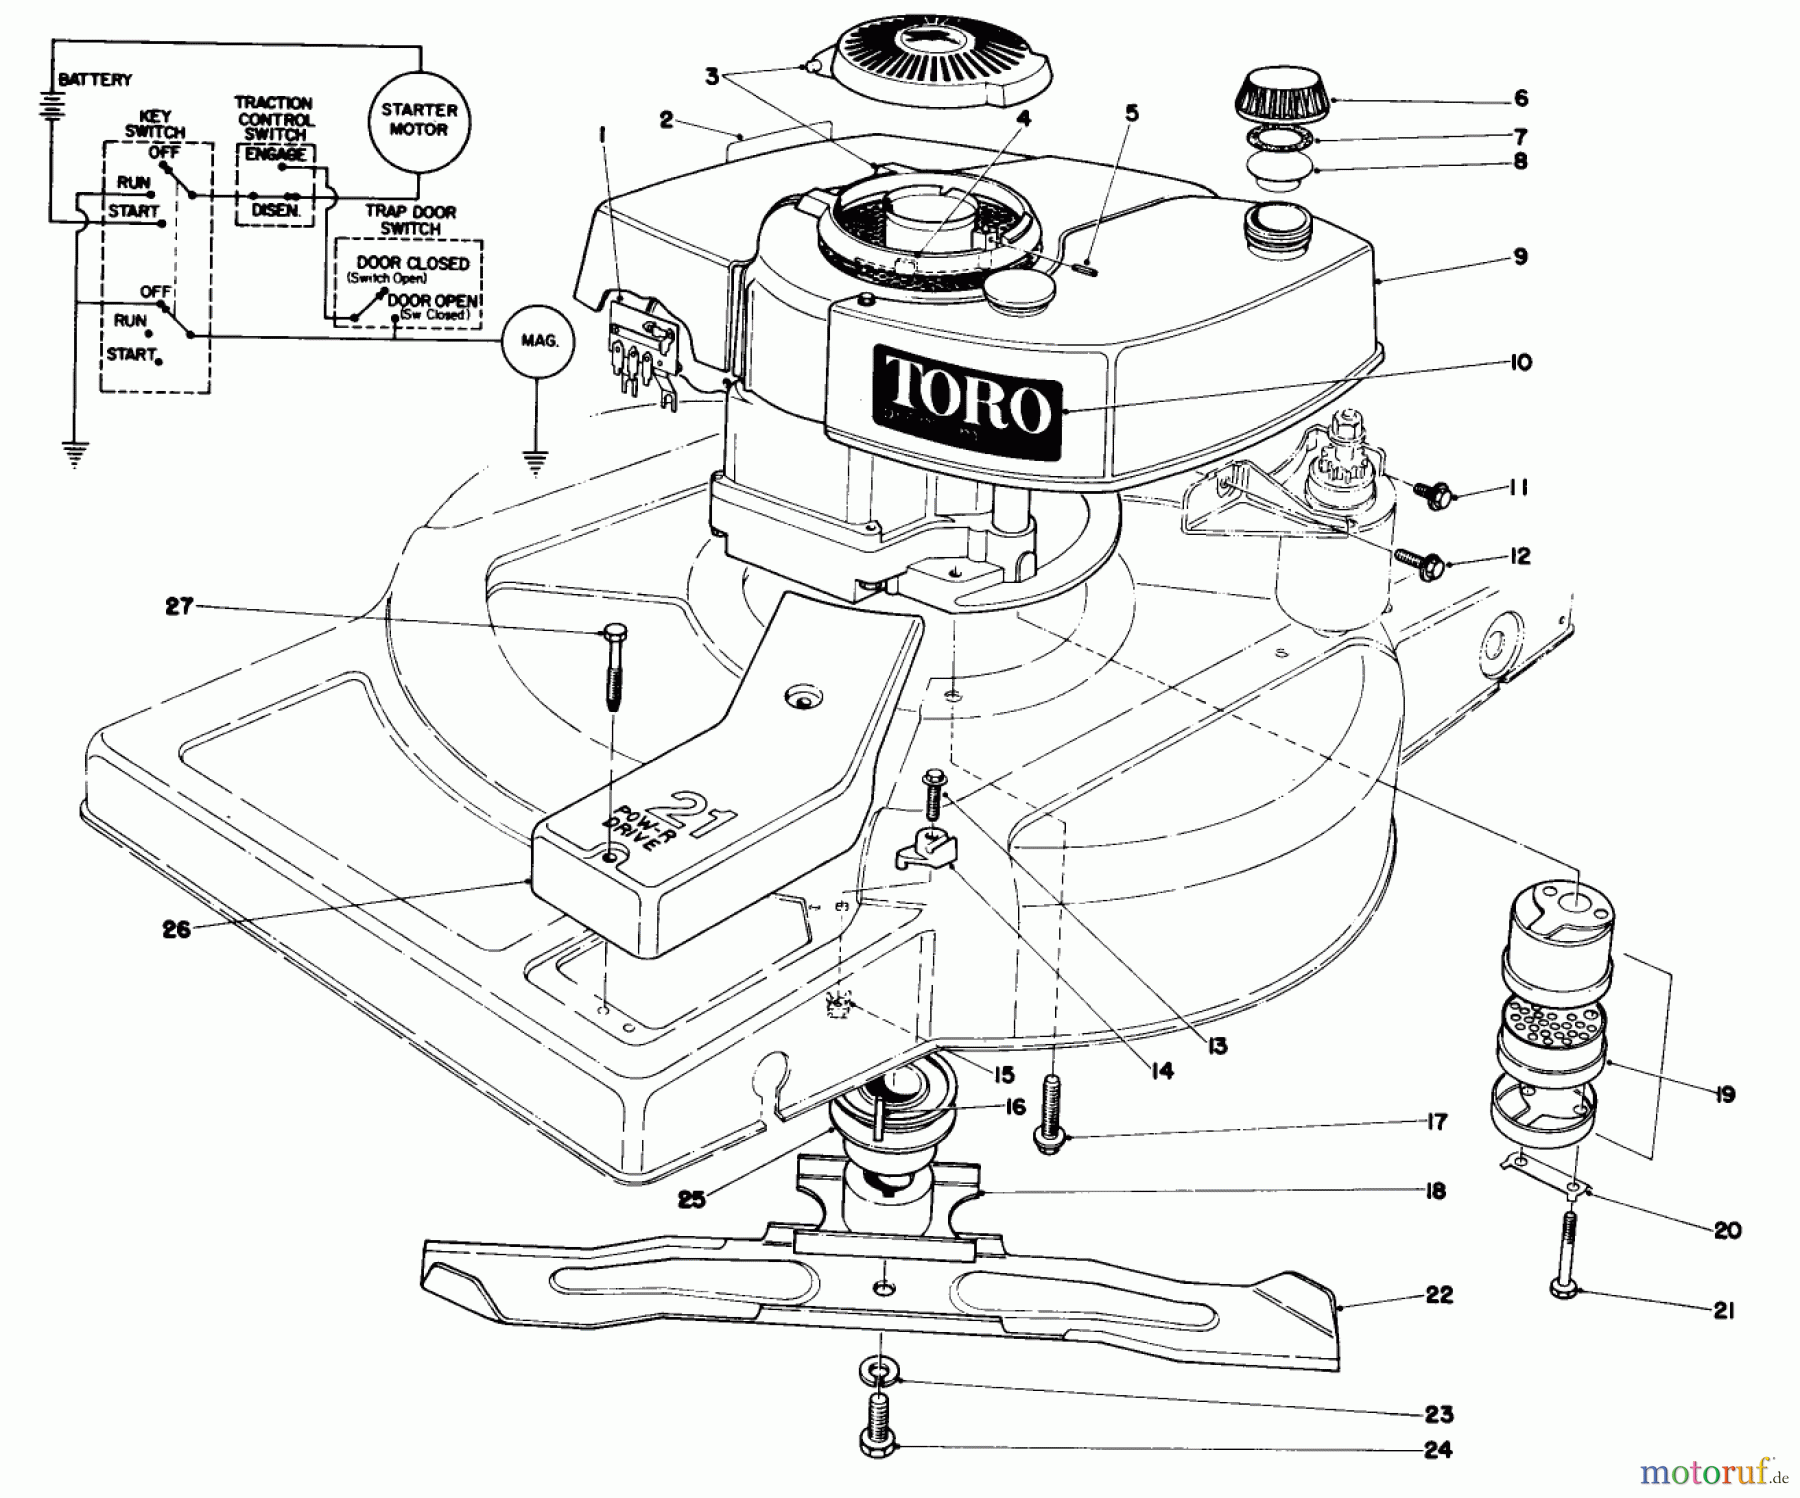  Toro Neu Mowers, Walk-Behind Seite 1 18085 - Toro Lawnmower, 1980 (0000001-0999999) ENGINE ASSEMBLY